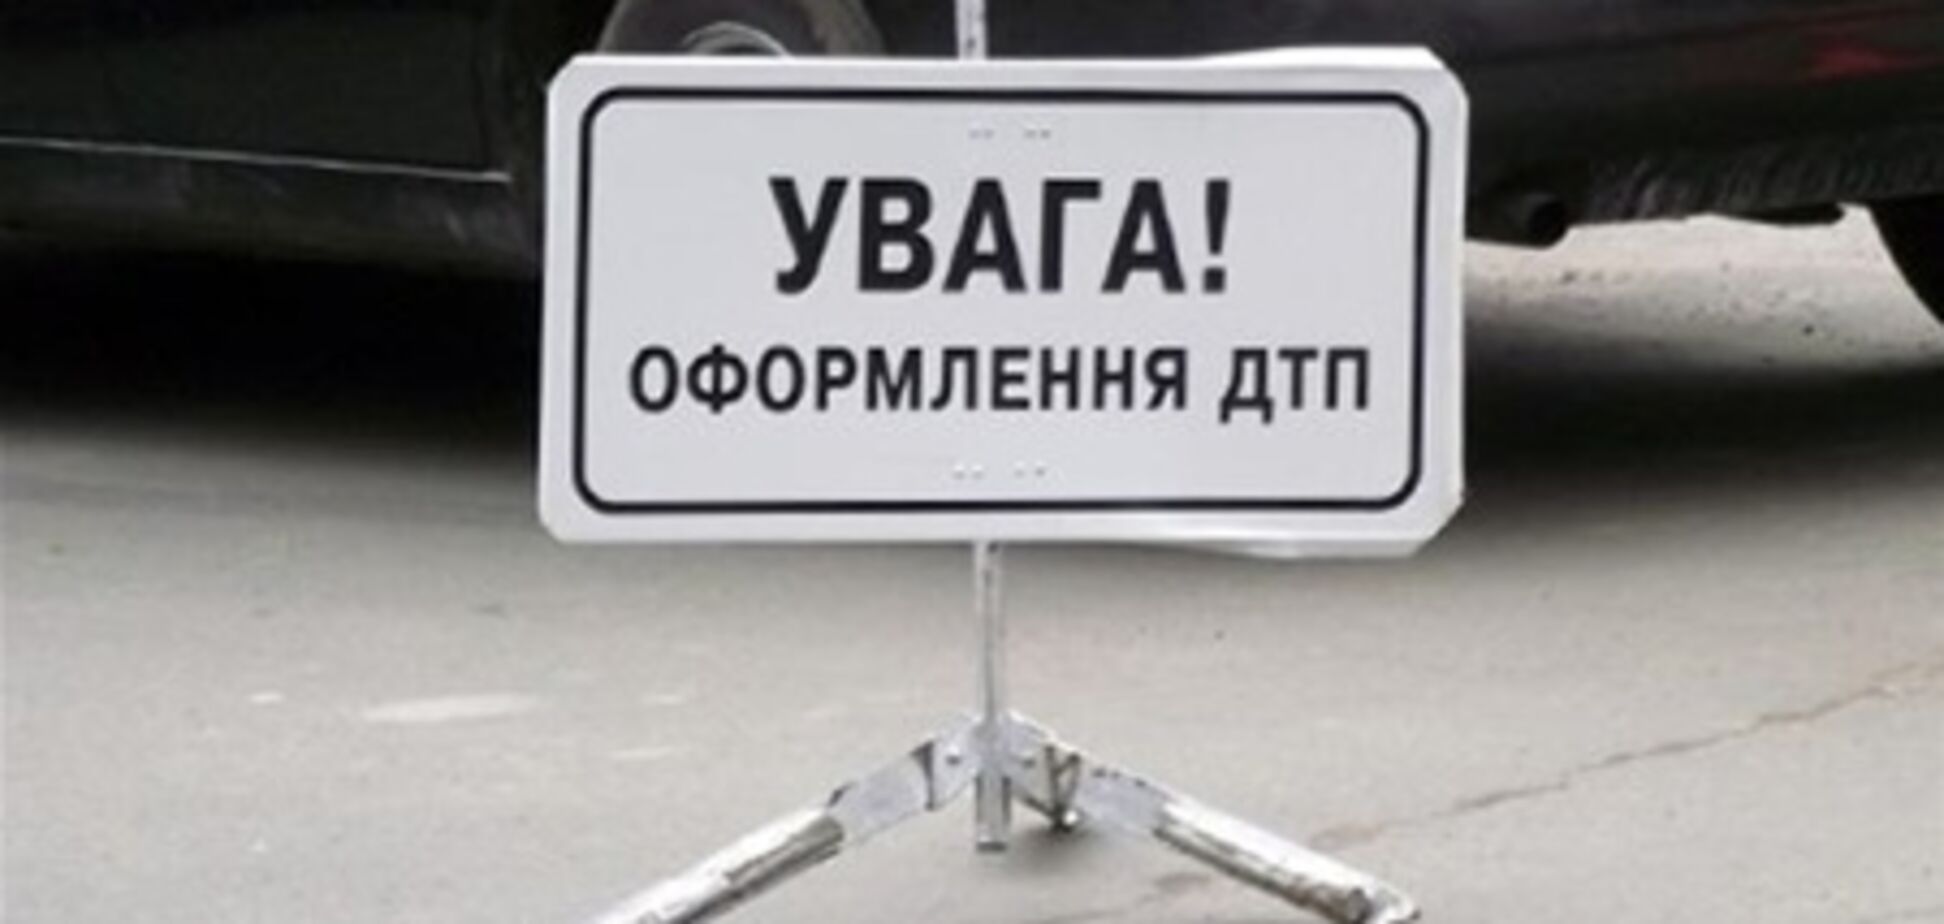 Даїшнику, який збив пішохода в Миколаєві, загрожує 8 років